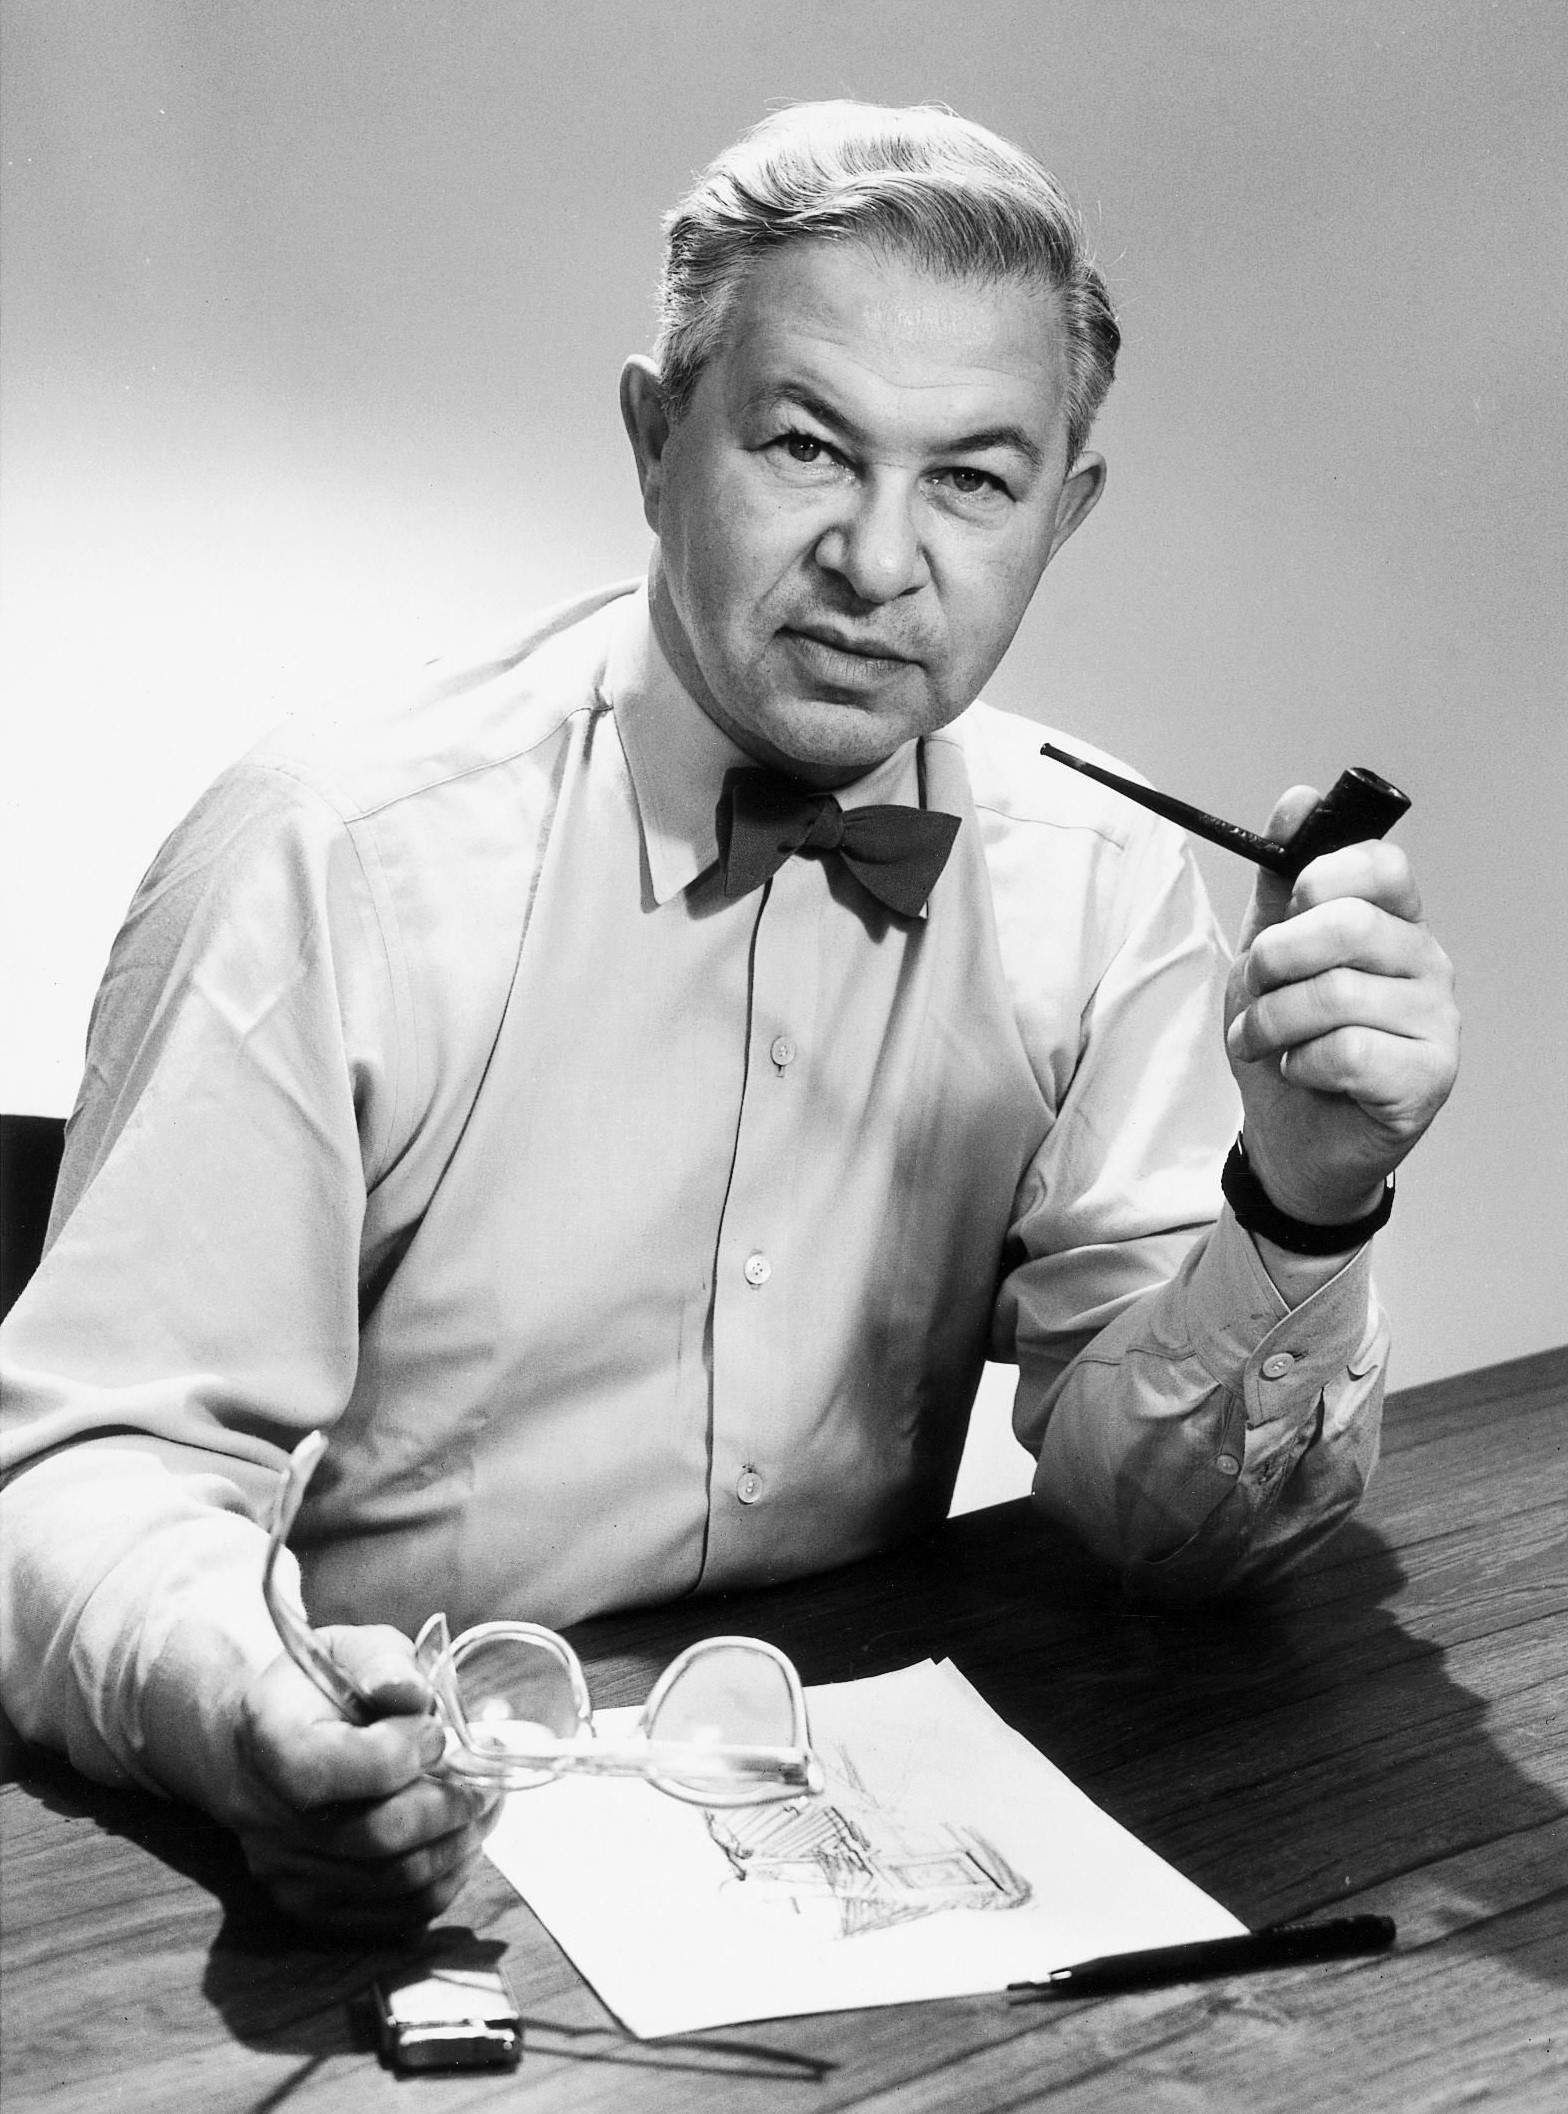 Arne Emil Jacobsen portrait en noir et blanc. C'est un homme aux cheveux courts. Il est assis à un bureau sur lequel se trouve un dessin et un crayon. Il est habillé d'une chemise et d'un noeud papillon. Il tient dans sa main gauche une pipe et dans sa main droite des lunettes. Il a une montre à son poignet gauche.